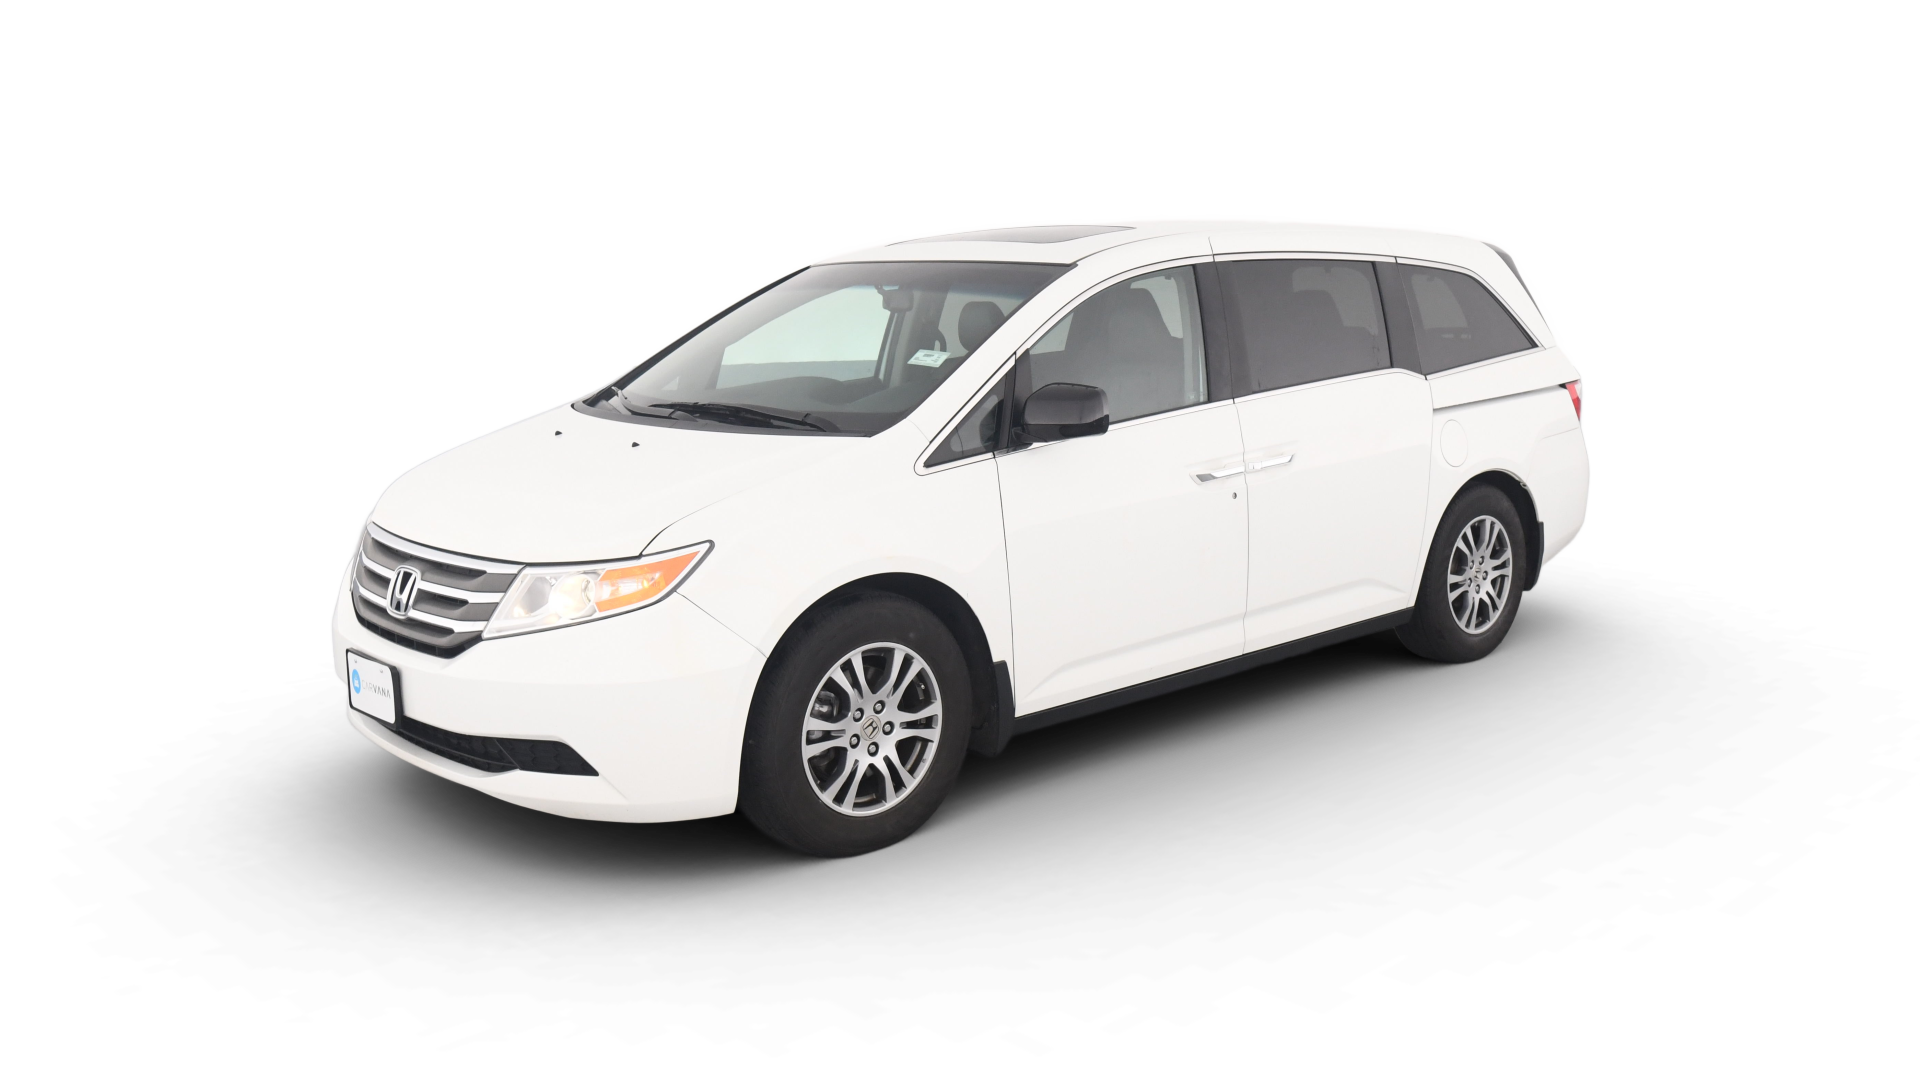 Honda Odyssey model image.